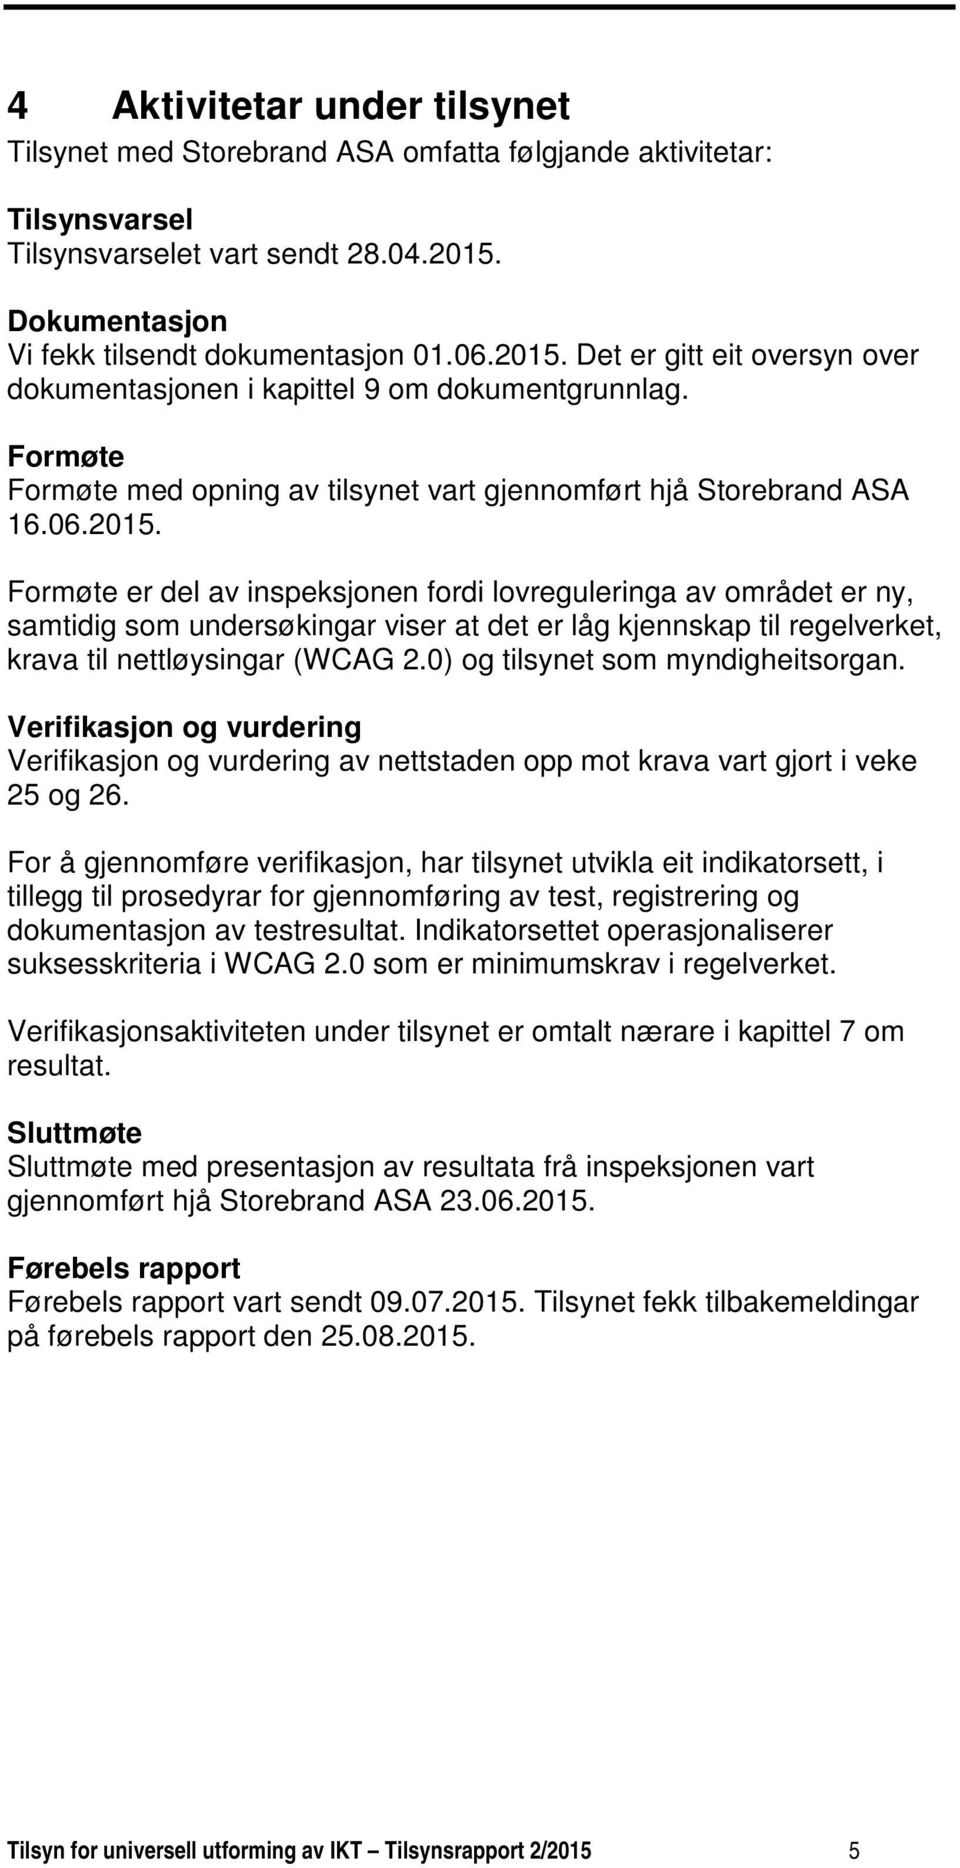 Formøte Formøte med opning av tilsynet vart gjennomført hjå Storebrand ASA 16.06.2015.